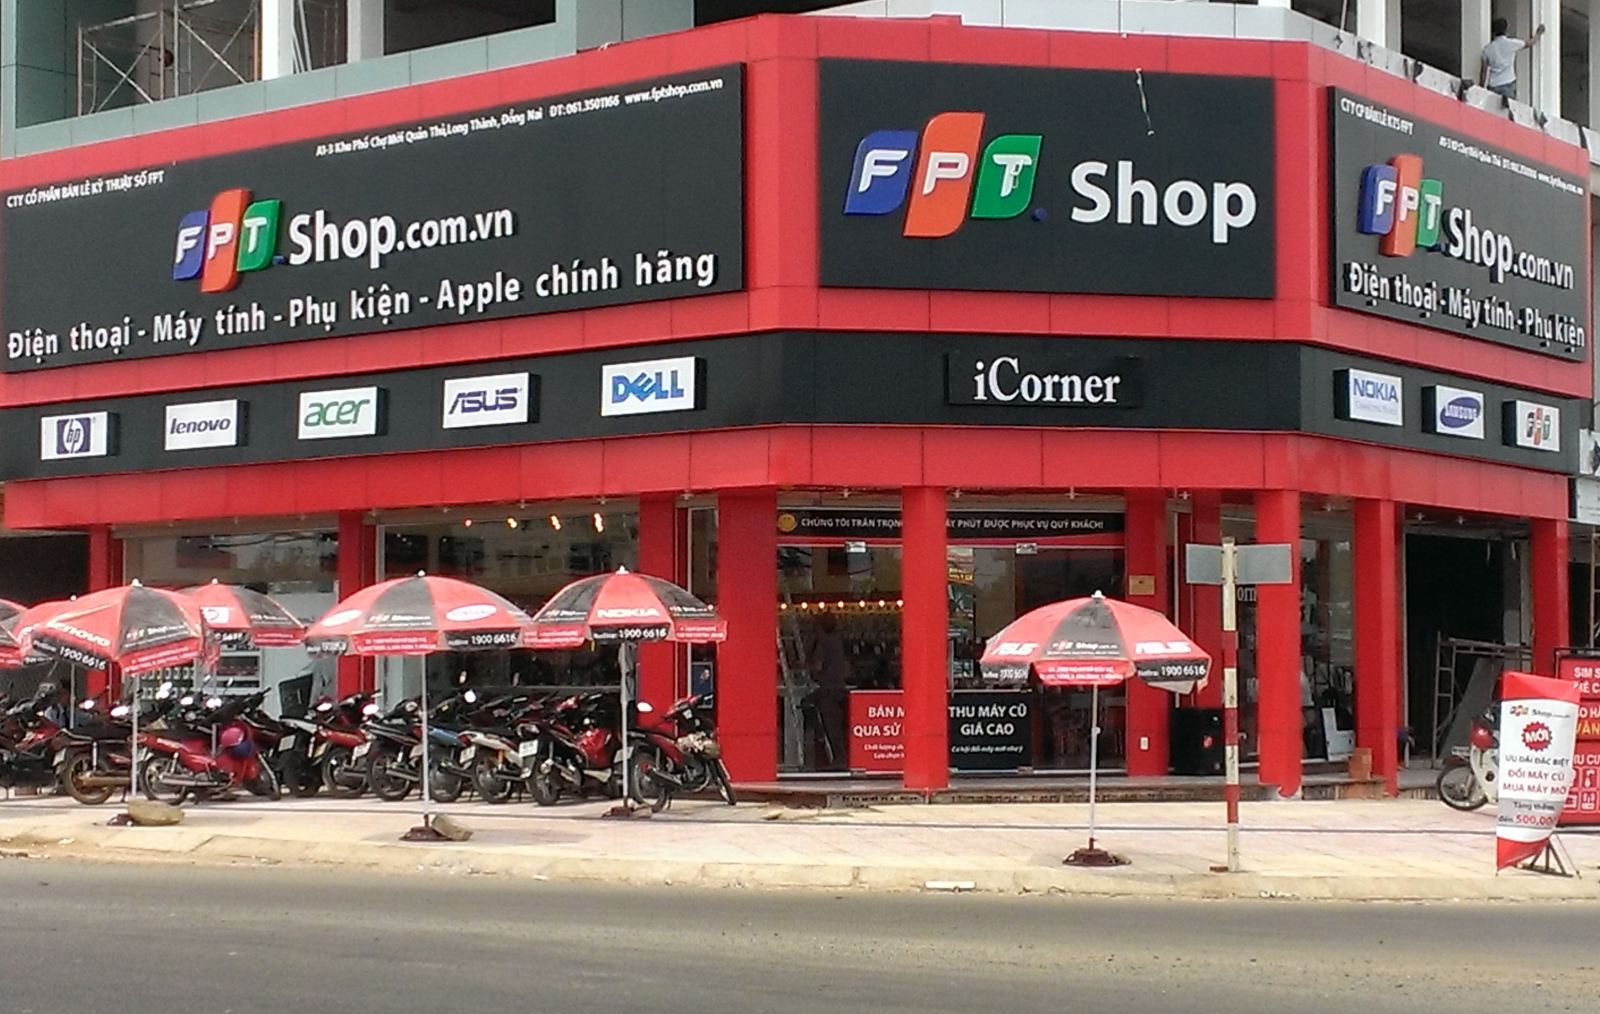 Apple Store mở cửa hàng trực tuyến tại Việt Nam, FPT Shop lên tiếng: Tự tin dịch vụ, giá cả cạnh tranh nhất thị trường - Ảnh 3.